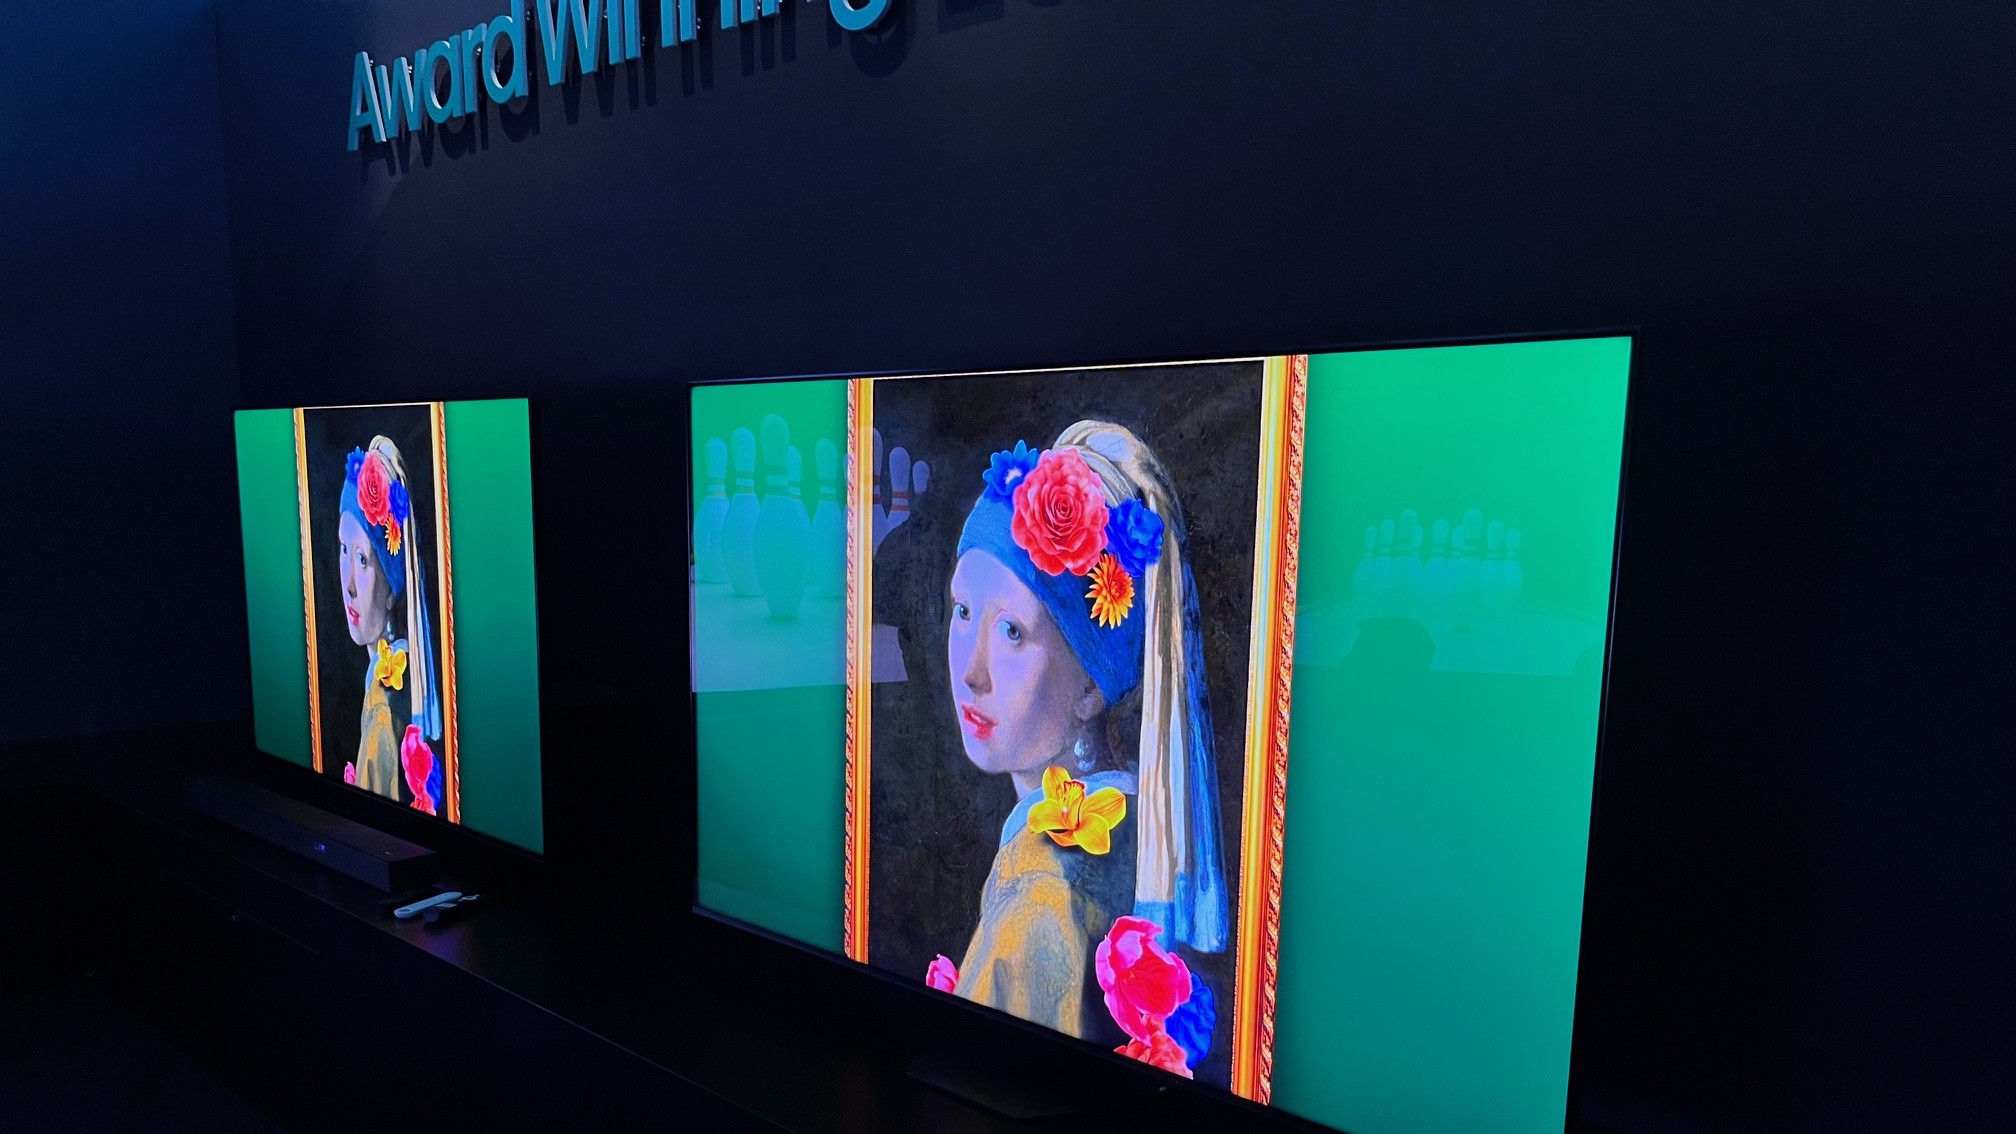 Hisense U8N TVs showing Vermeer painting